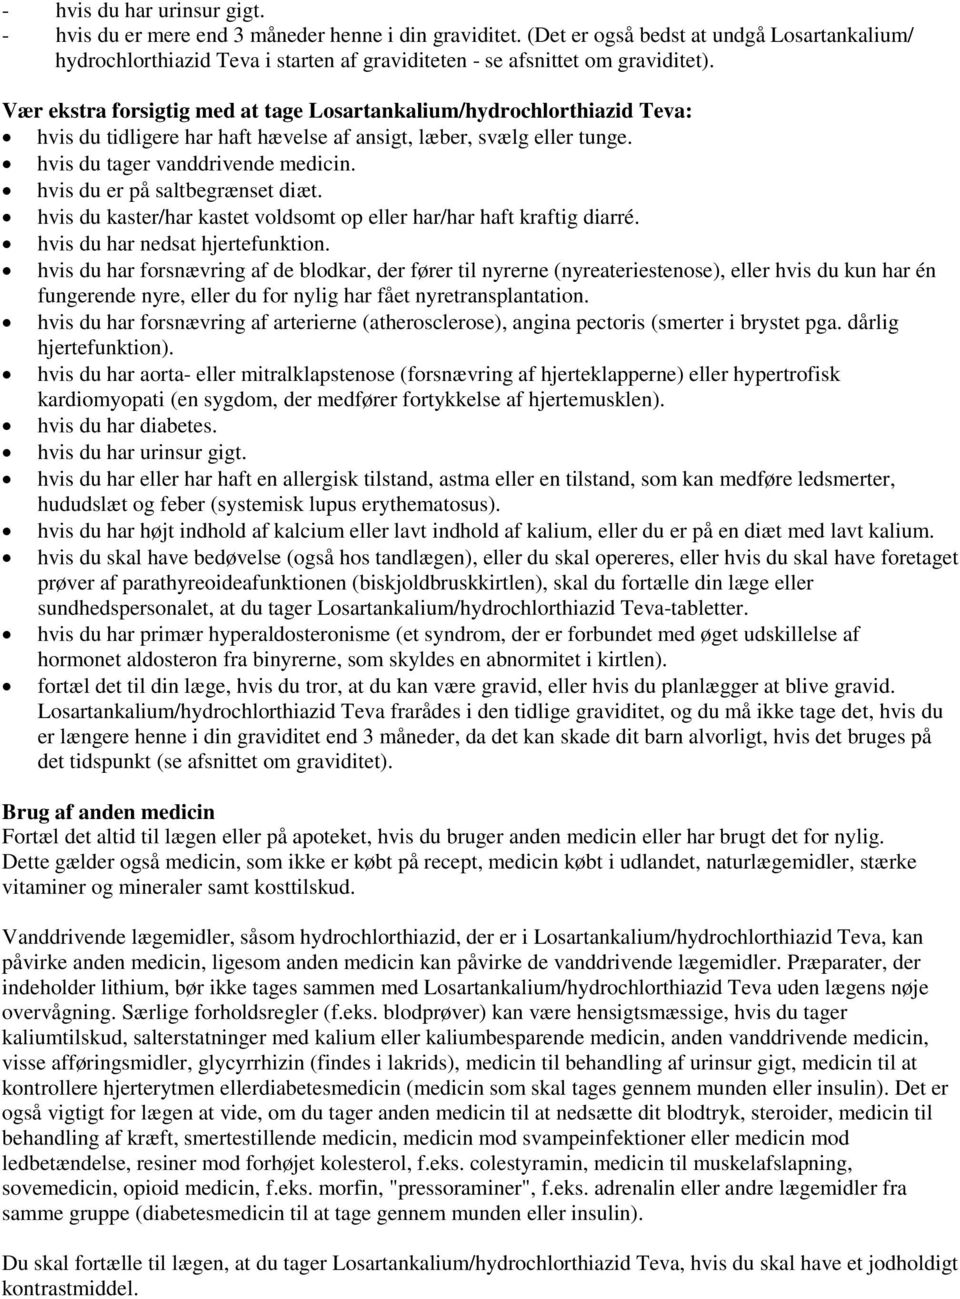 INDLÆGSSEDDEL: INFORMATION TIL BRUGEREN - PDF Free Download